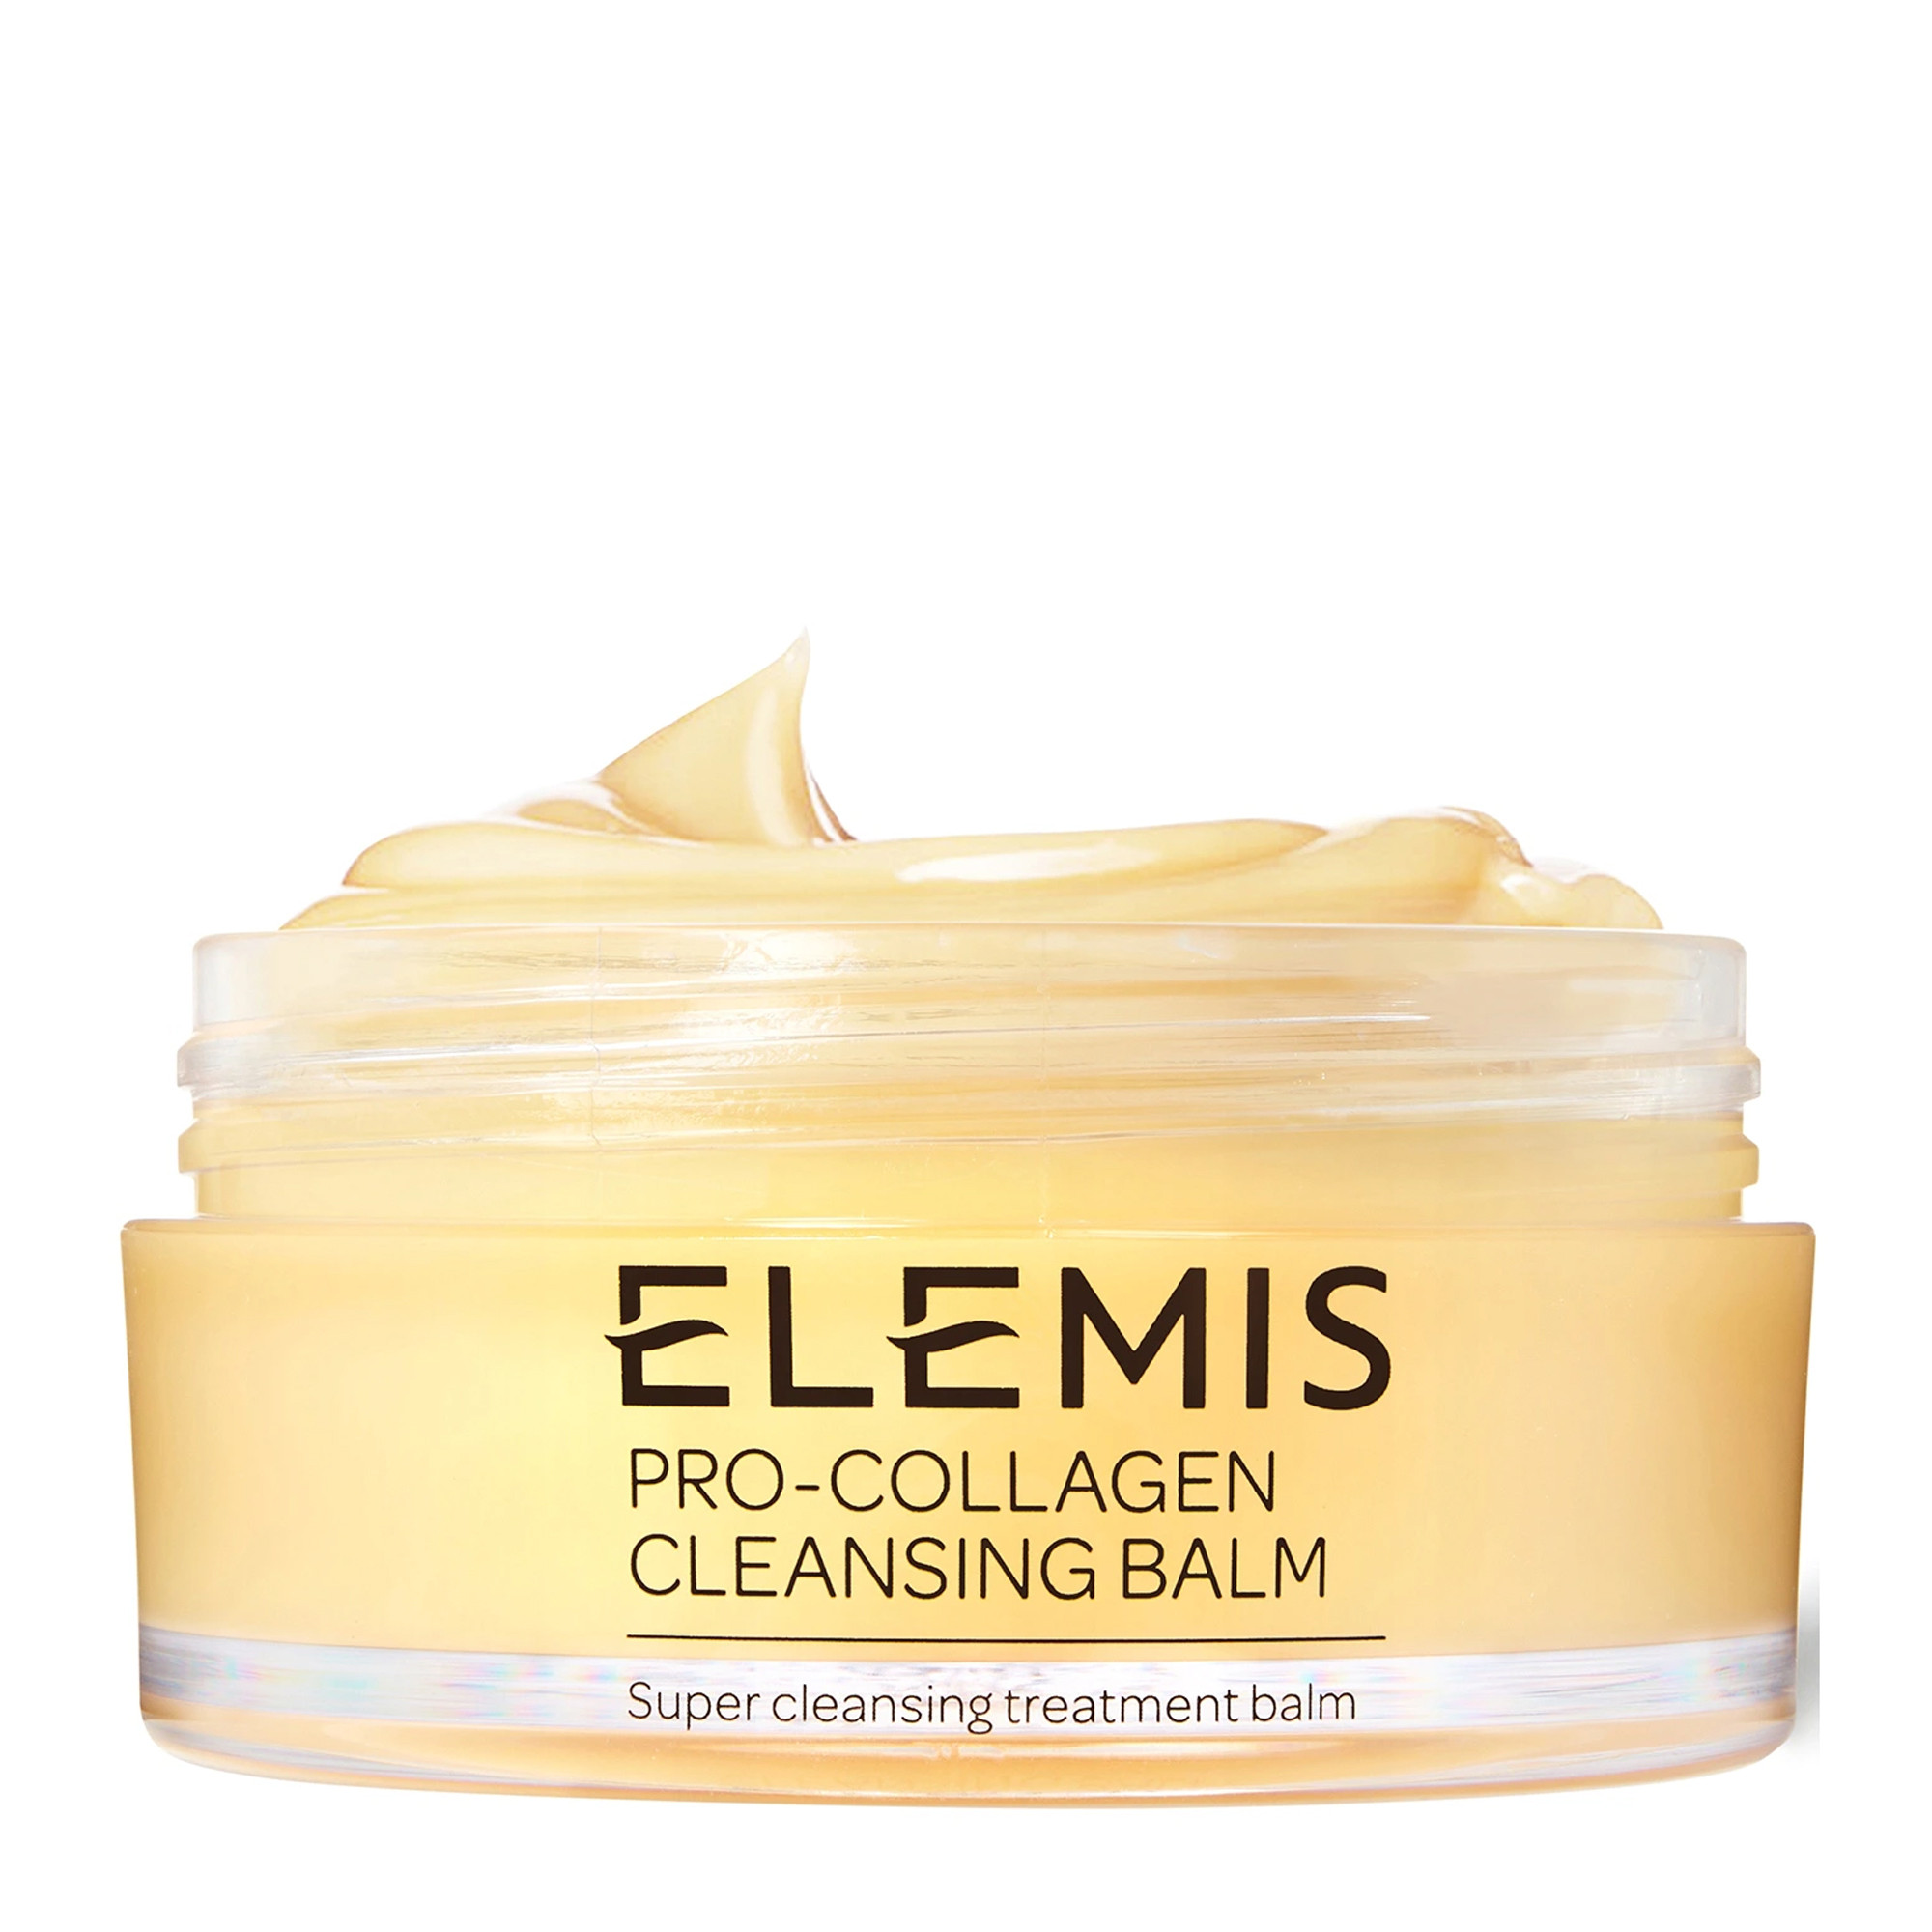 Бальзам для умывания Про-Коллаген Elelmis Pro-Collagen Cleansing Balm